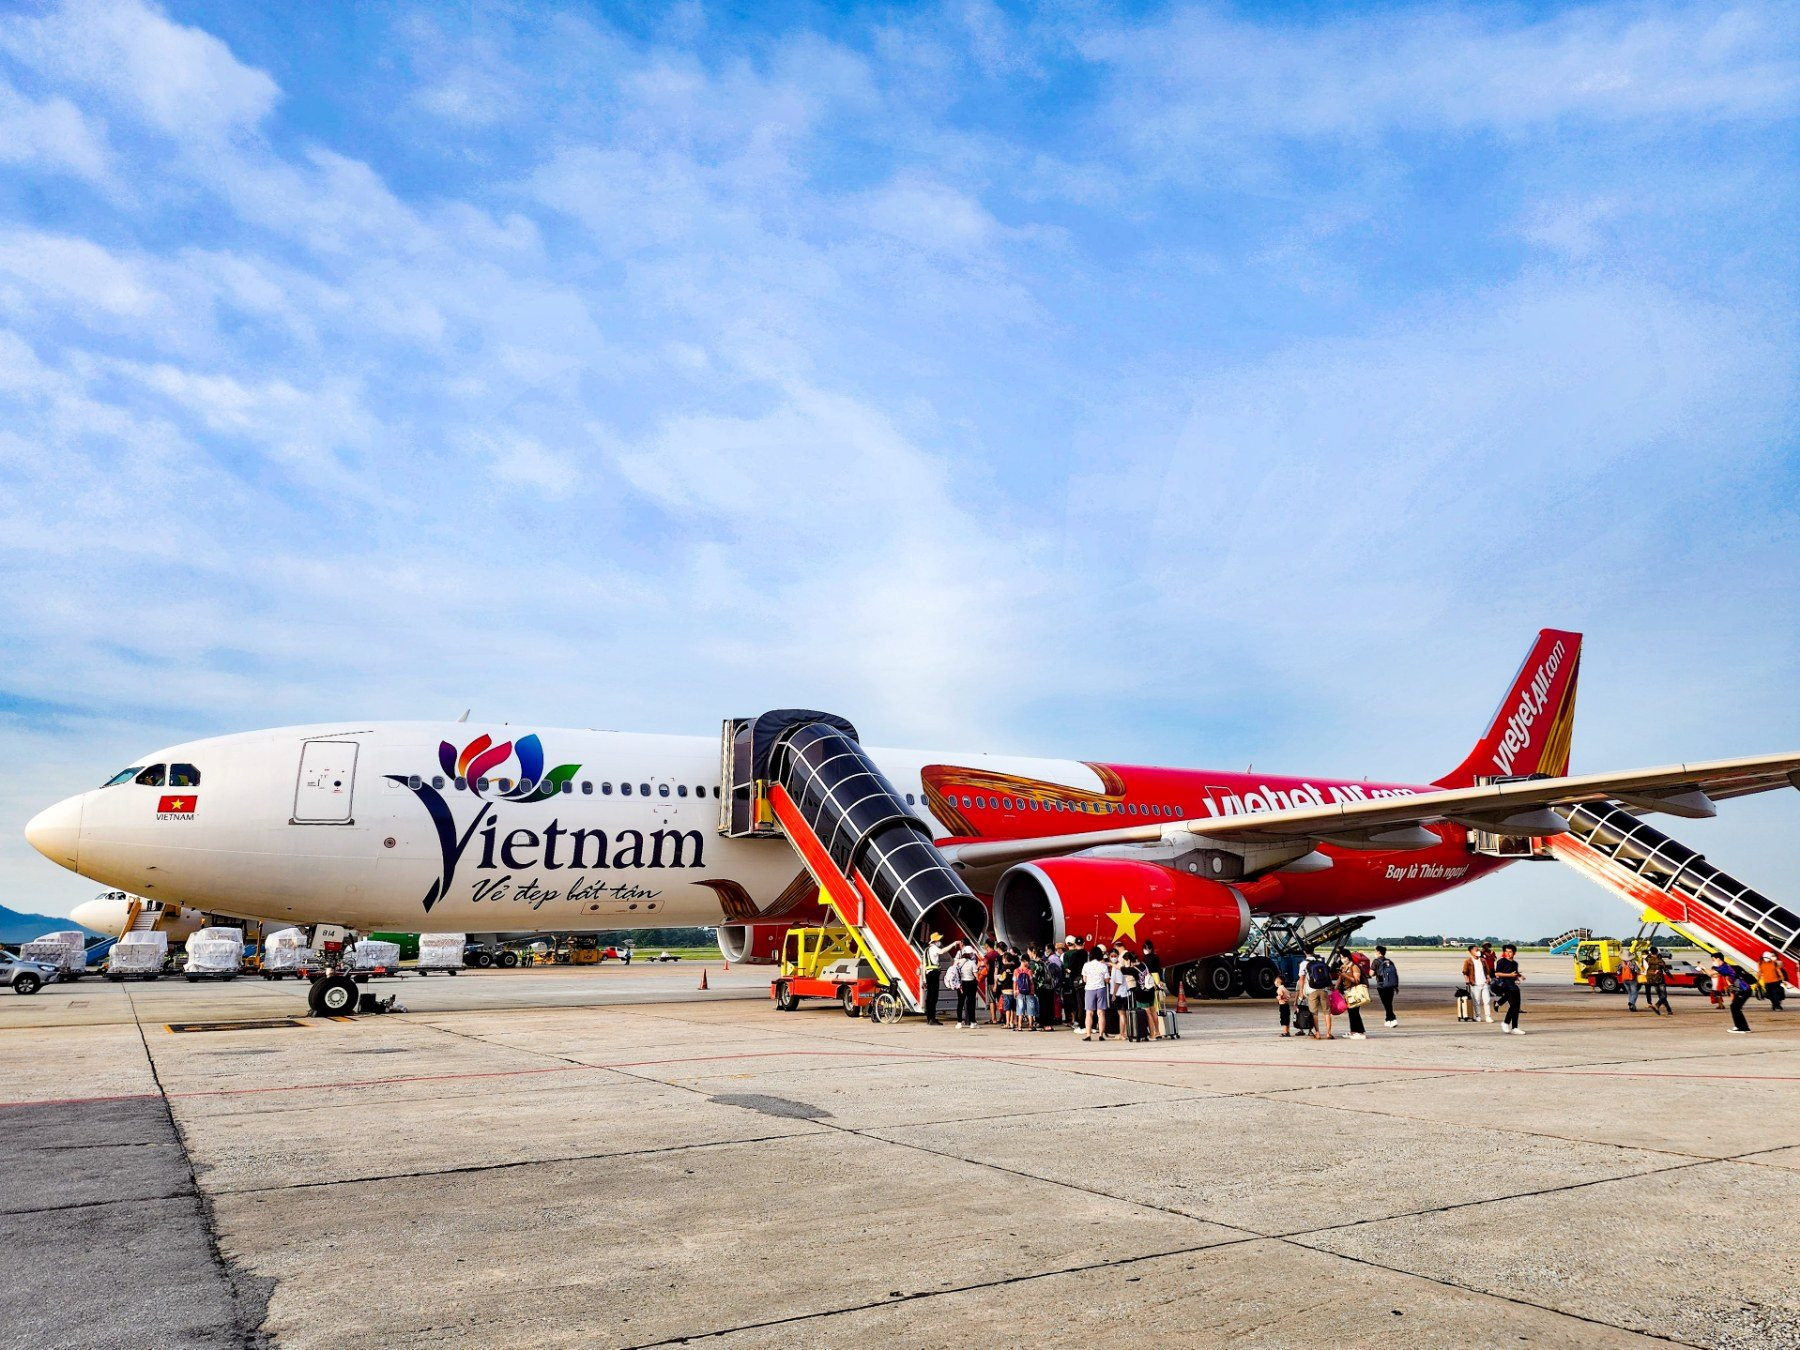 Biểu tượng Du lịch Việt Nam lên thân tàu bay lớn của Vietjet